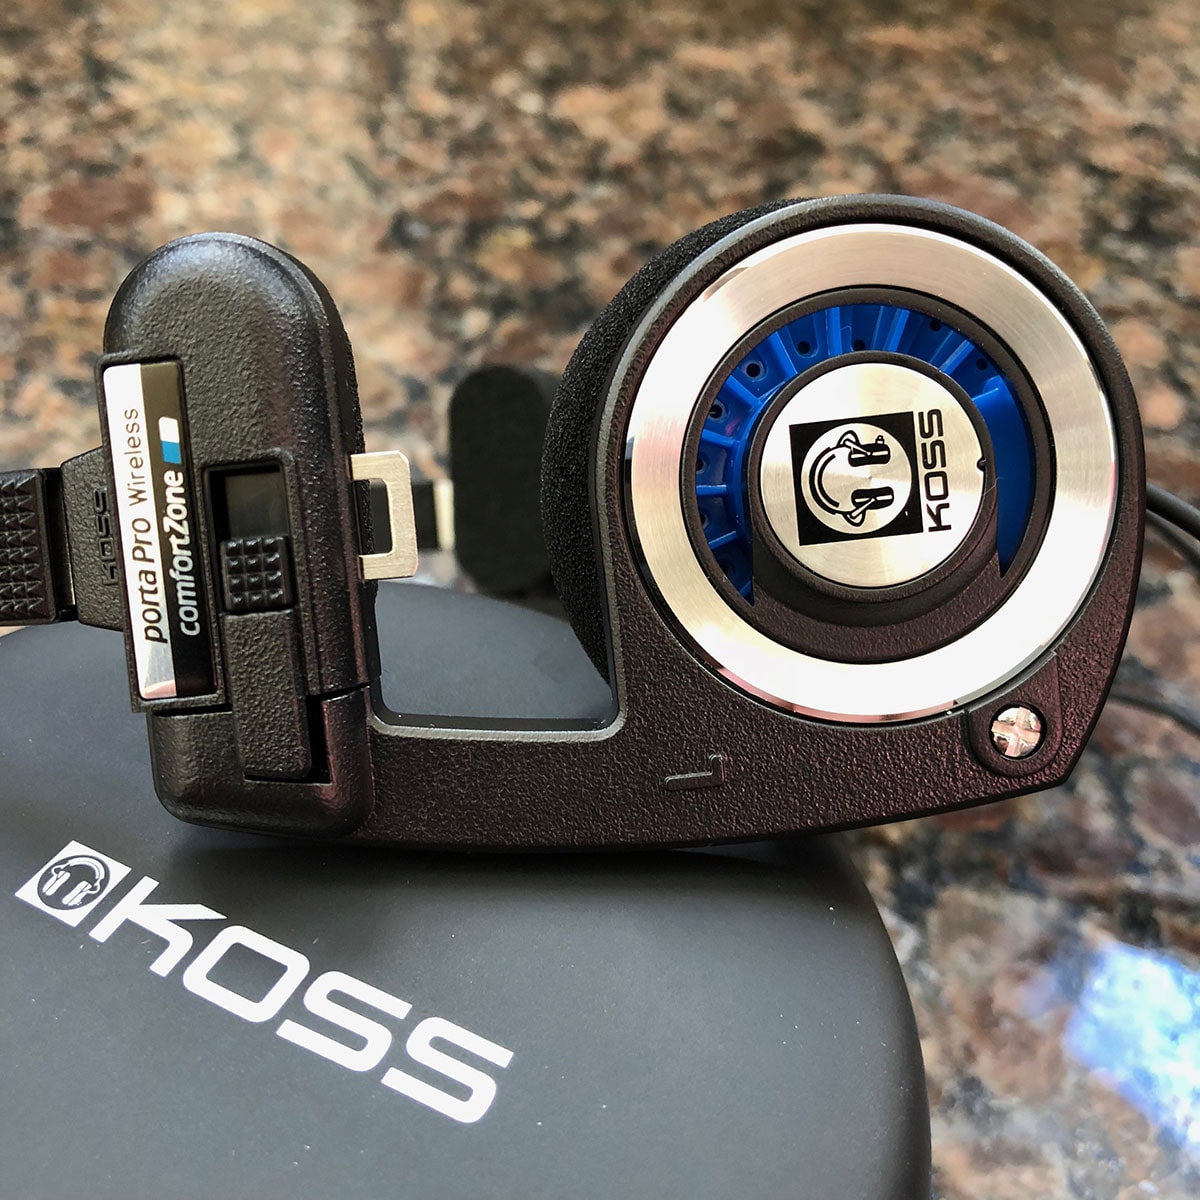 Koss Porta Pro Classic On Ear Headphones - Gears For Ears